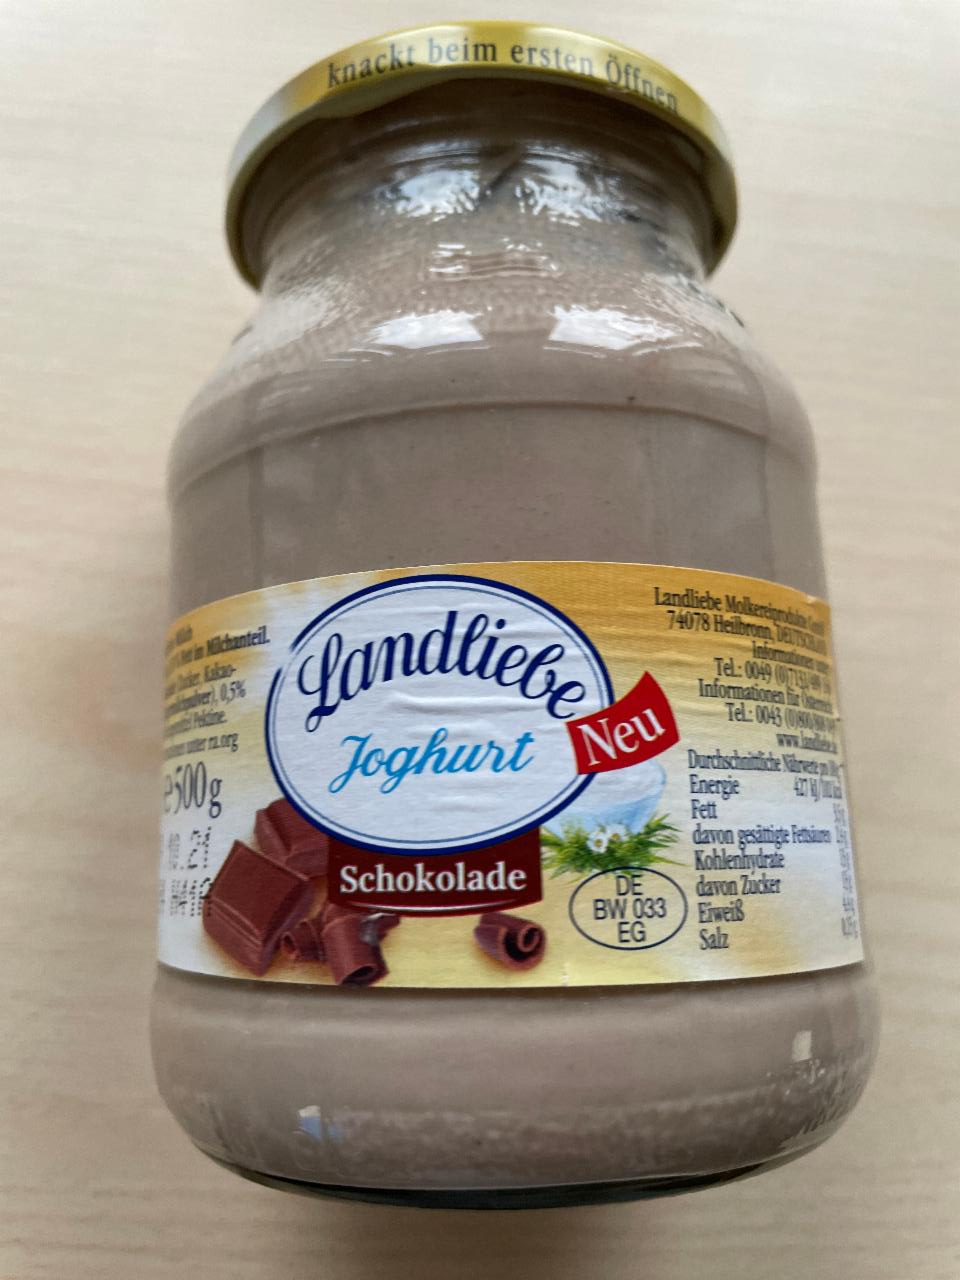 Landliebe Joghurt Schokolade - nutričné a kJ hodnoty kalórie